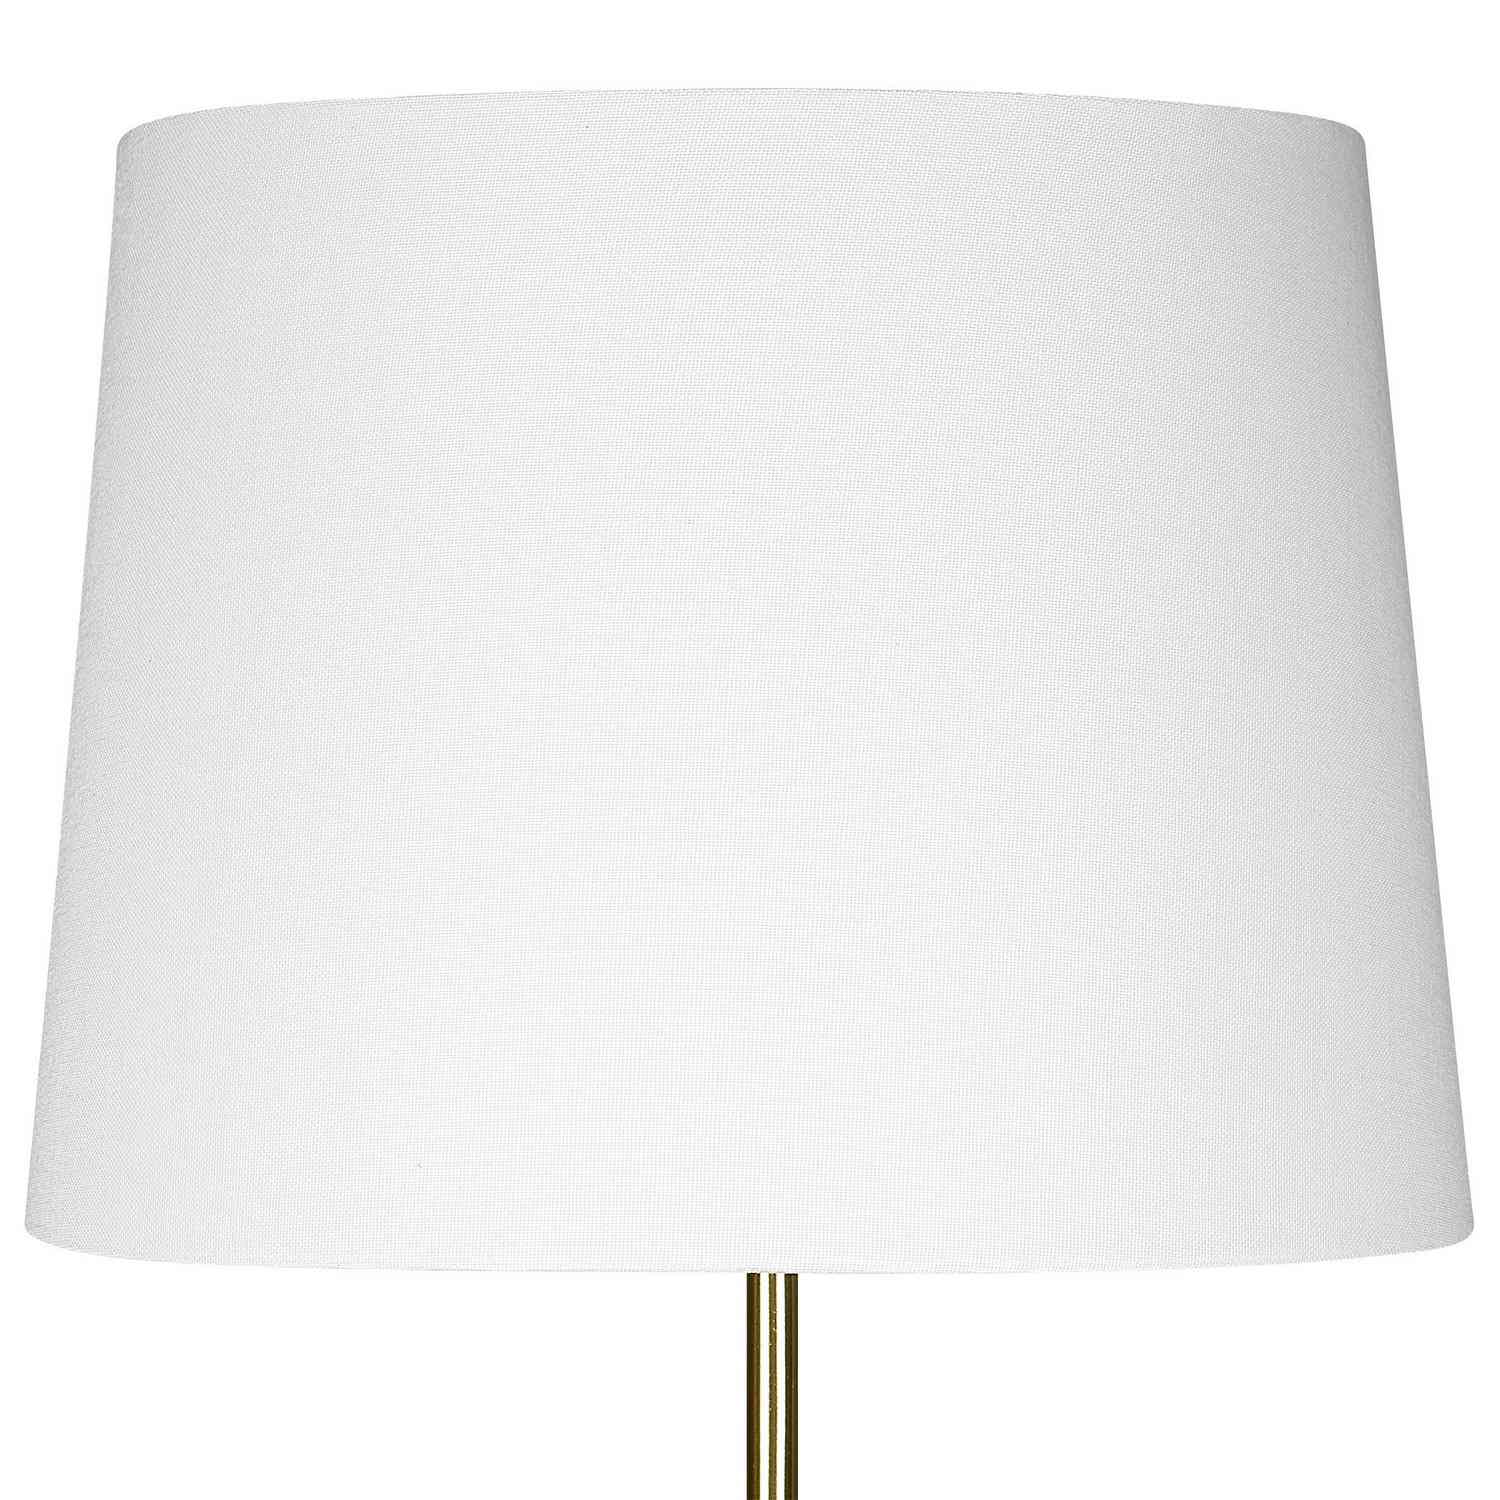 ABC Accent ABC-26088-1 Table Lamp - White Ceramic